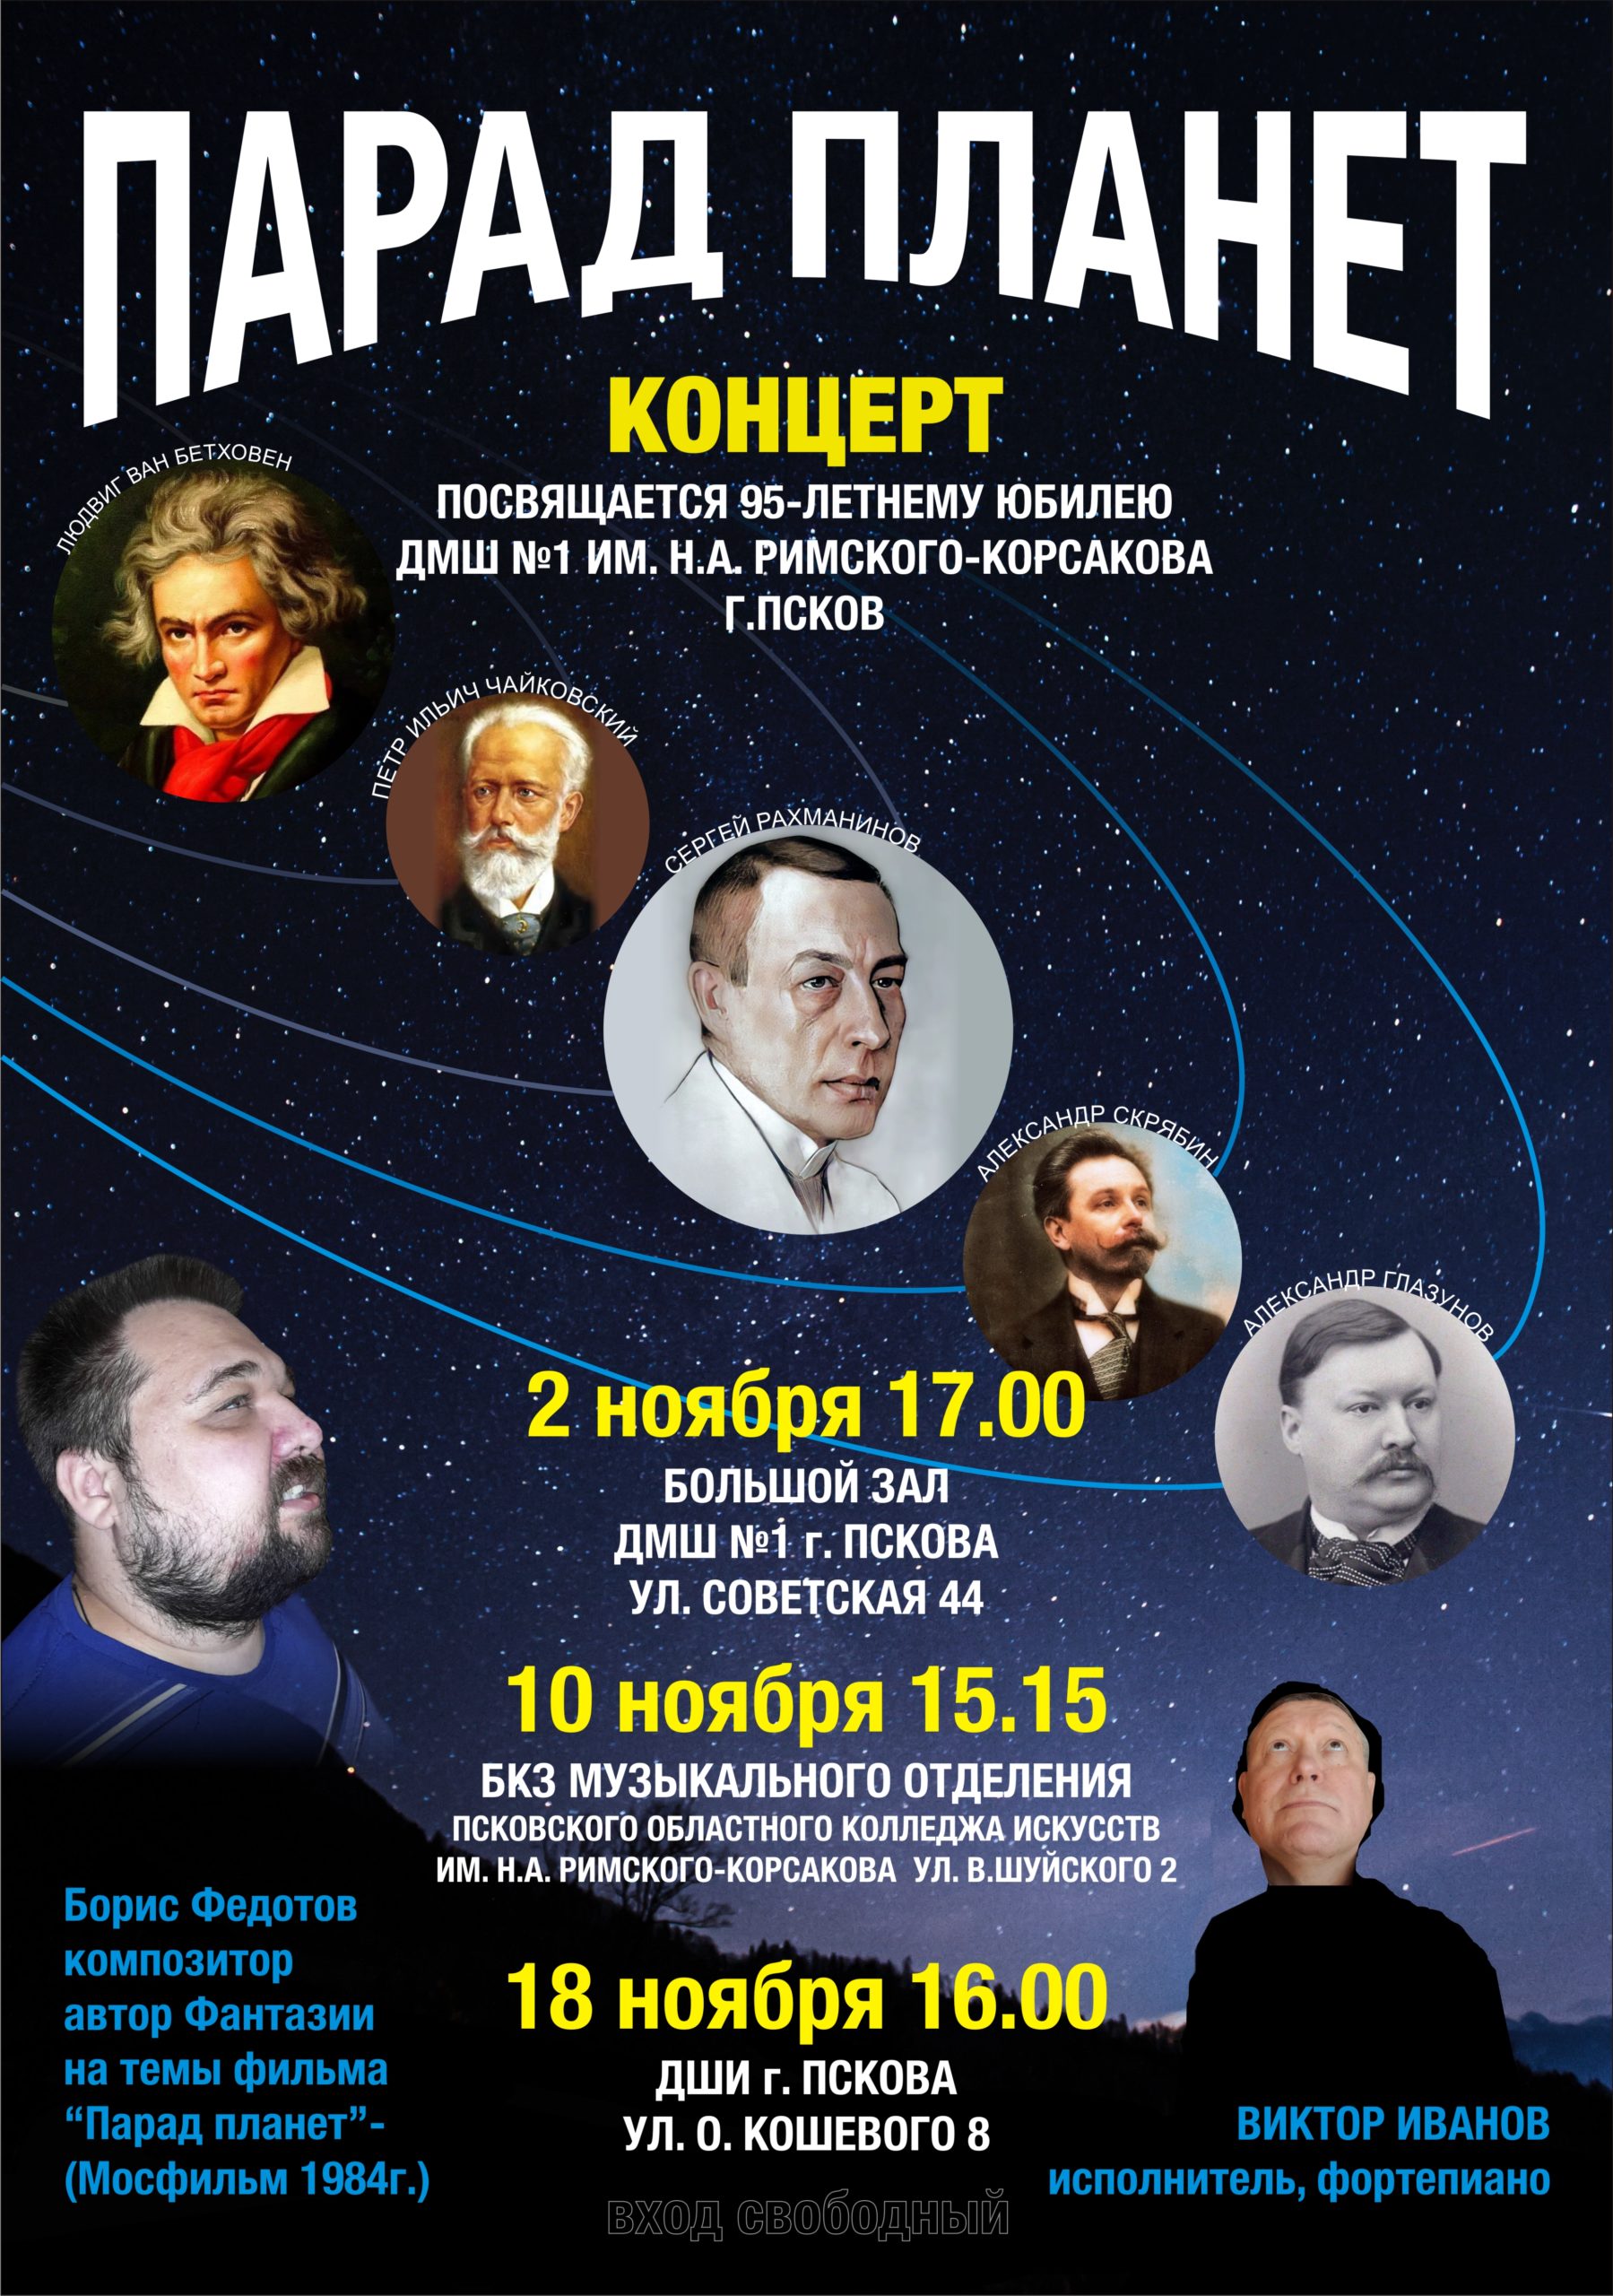 kontsert-parad-planet-projdyot-v-kolledzhe-iskusstv-10-noyabrya